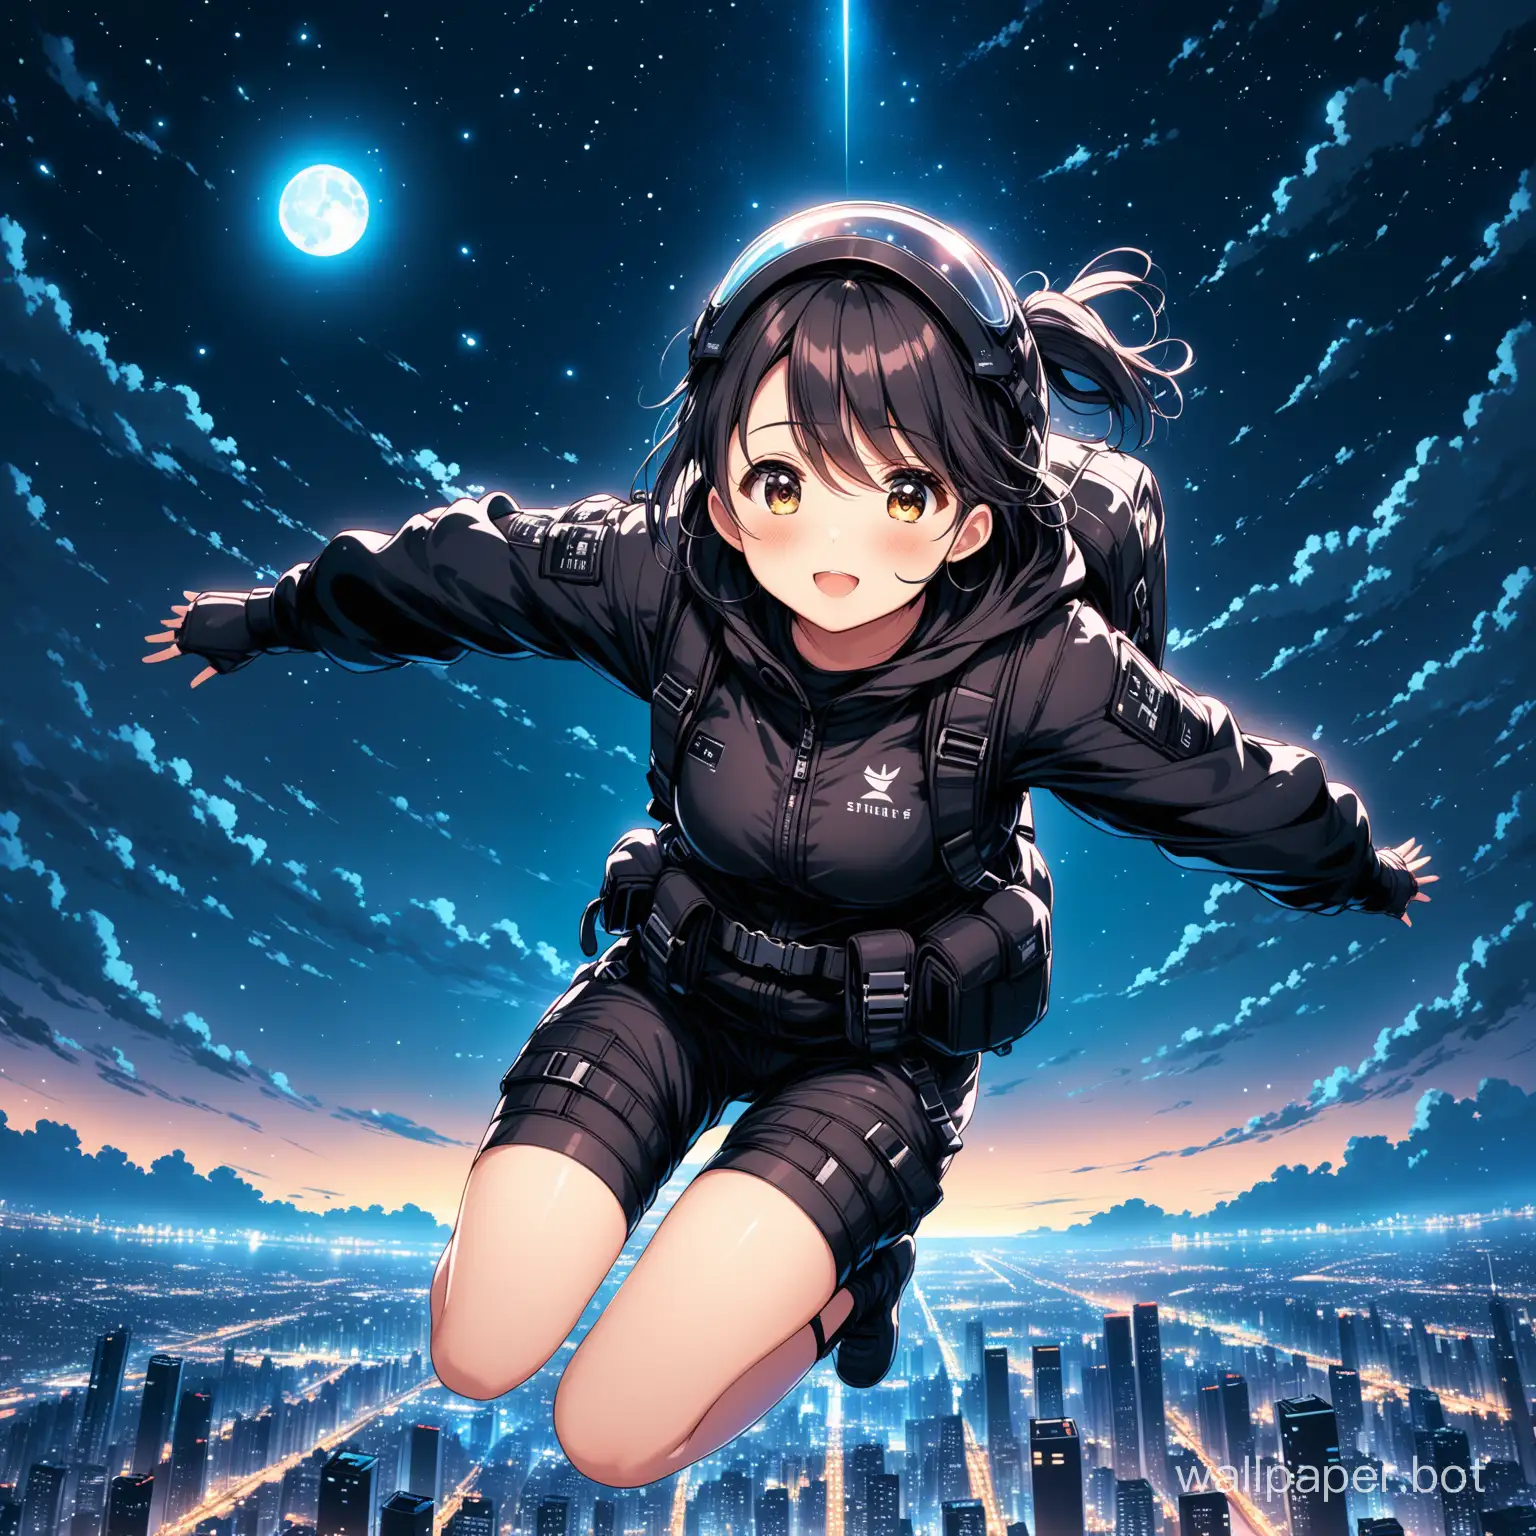 Cute Girl in techwear free falling in a night sky cityscape